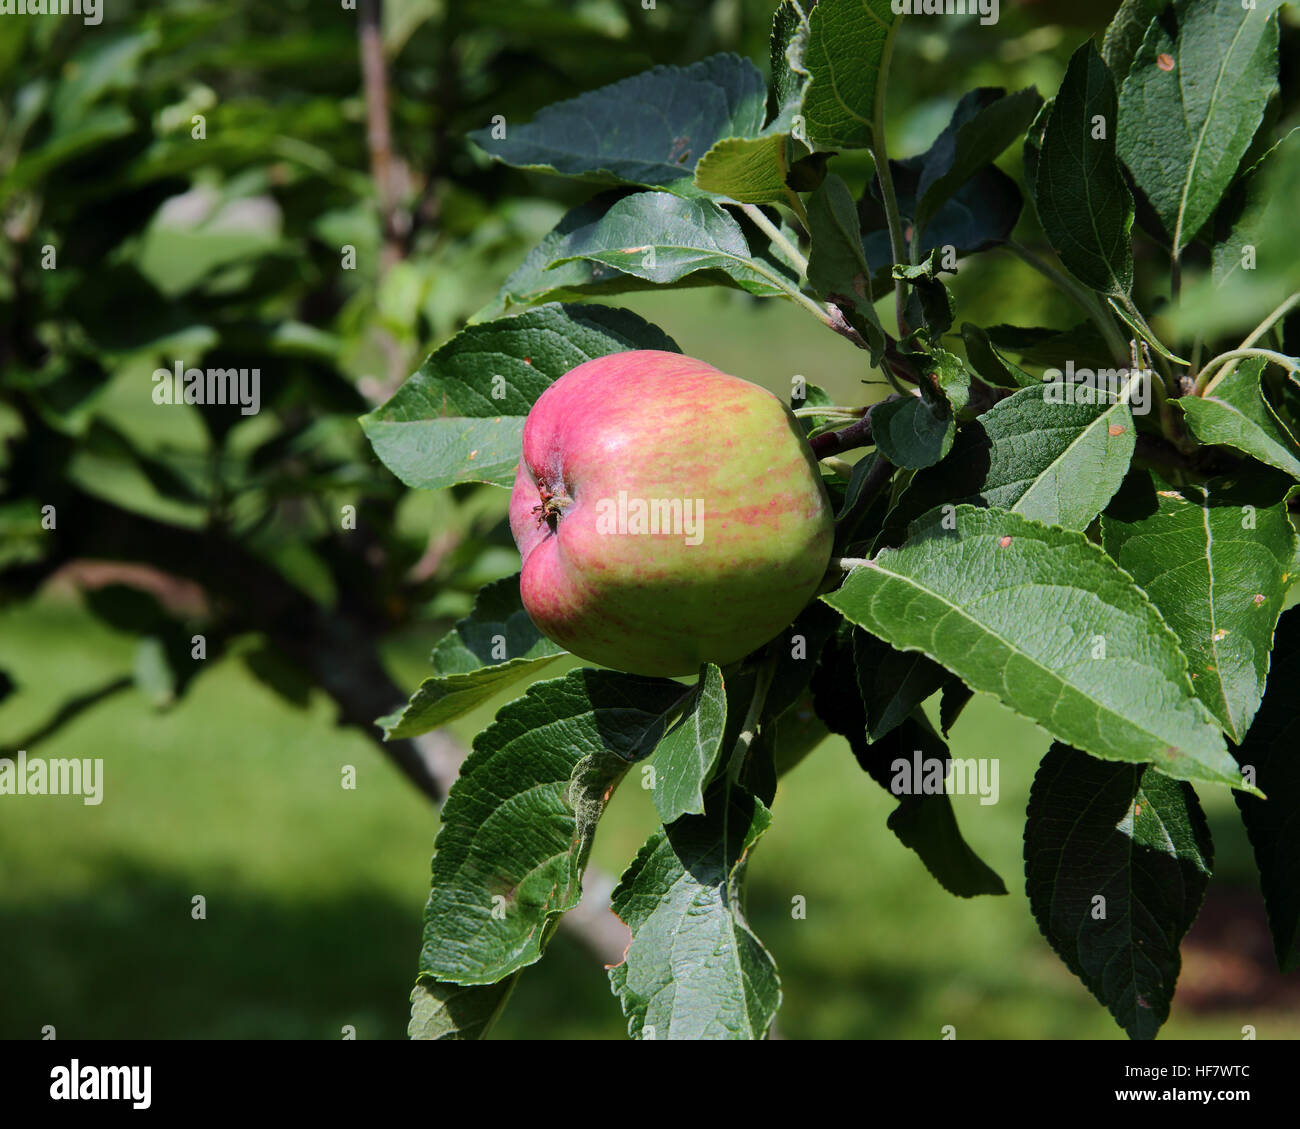 Uno quasi mature apple con red blush sul ramo con foglie Foto Stock